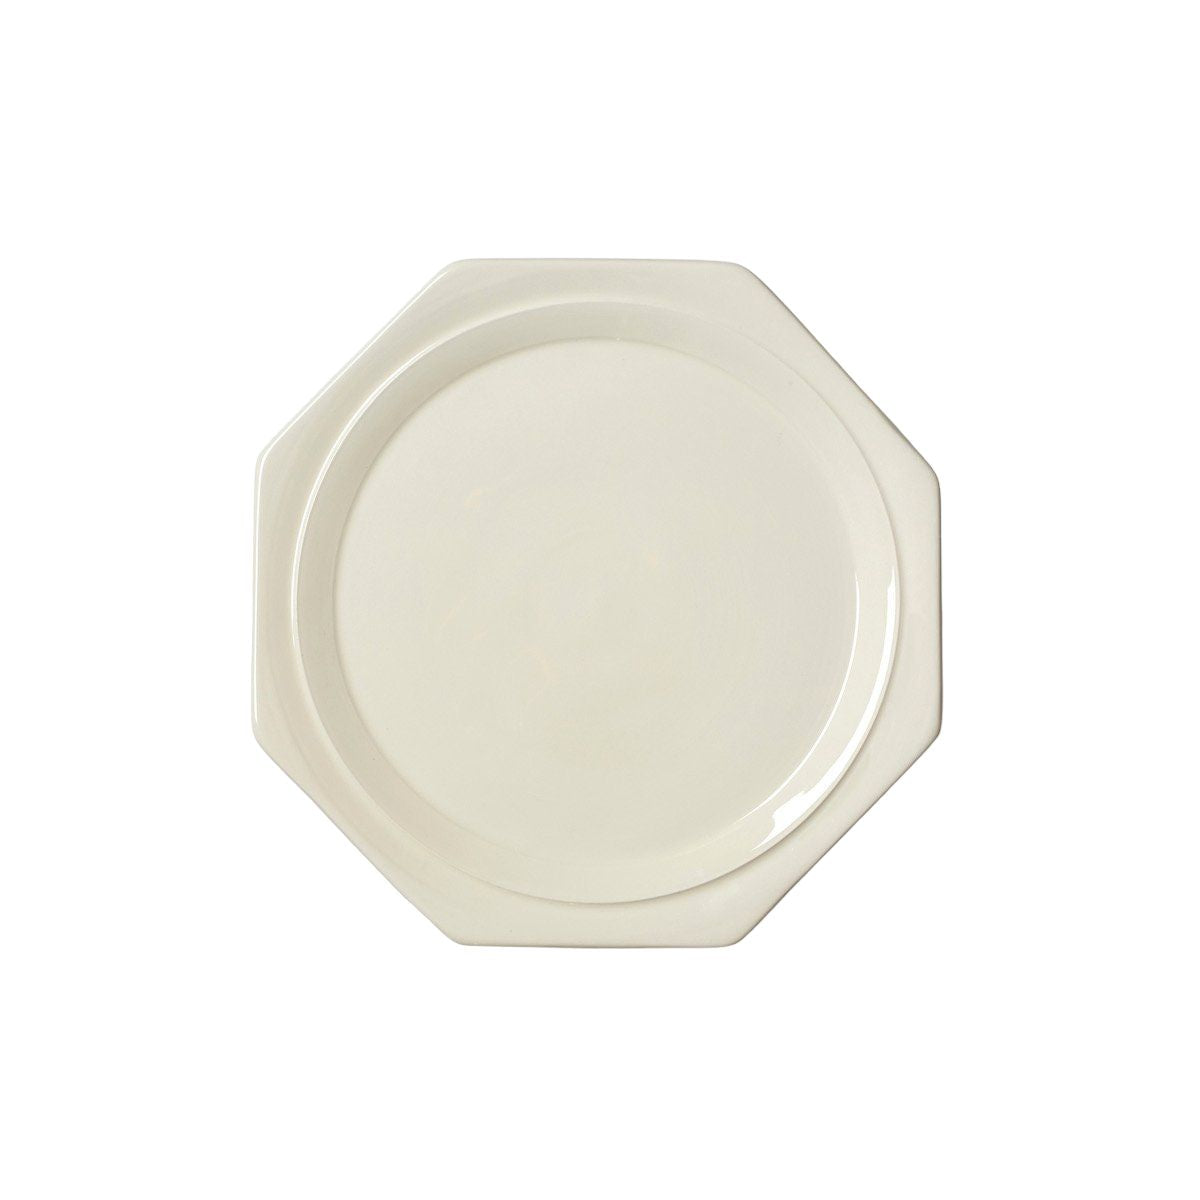 Glazed White Creamware Octagonal Dessert Plate